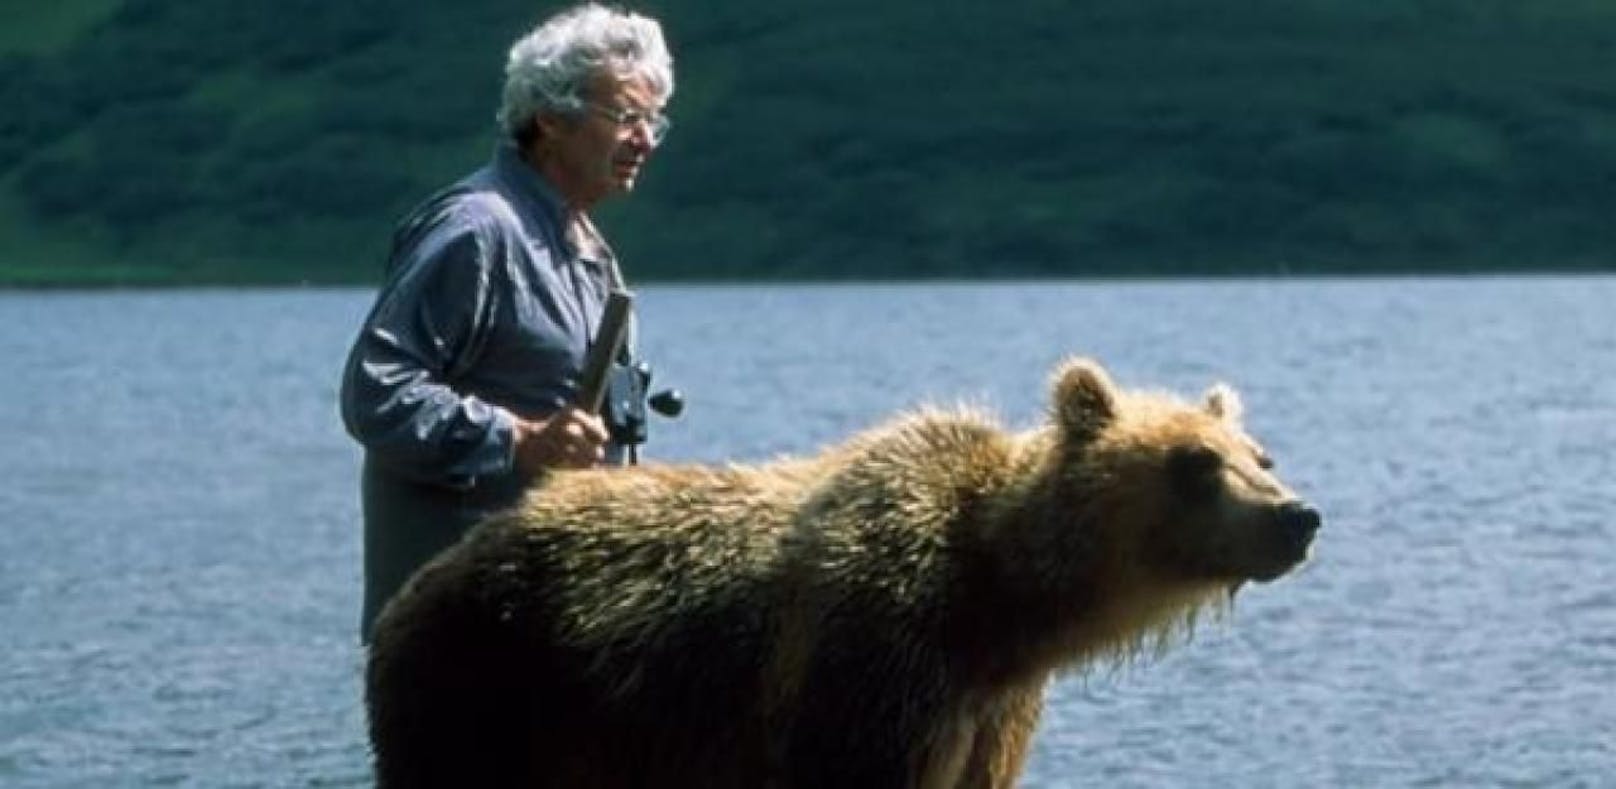 Der kanadische Bärenforscher Charlie Russell starb am 7. Mai 2018 in Calgary im Alter von 76 Jahren aufgrund von Komplikationen nach einer Operation.